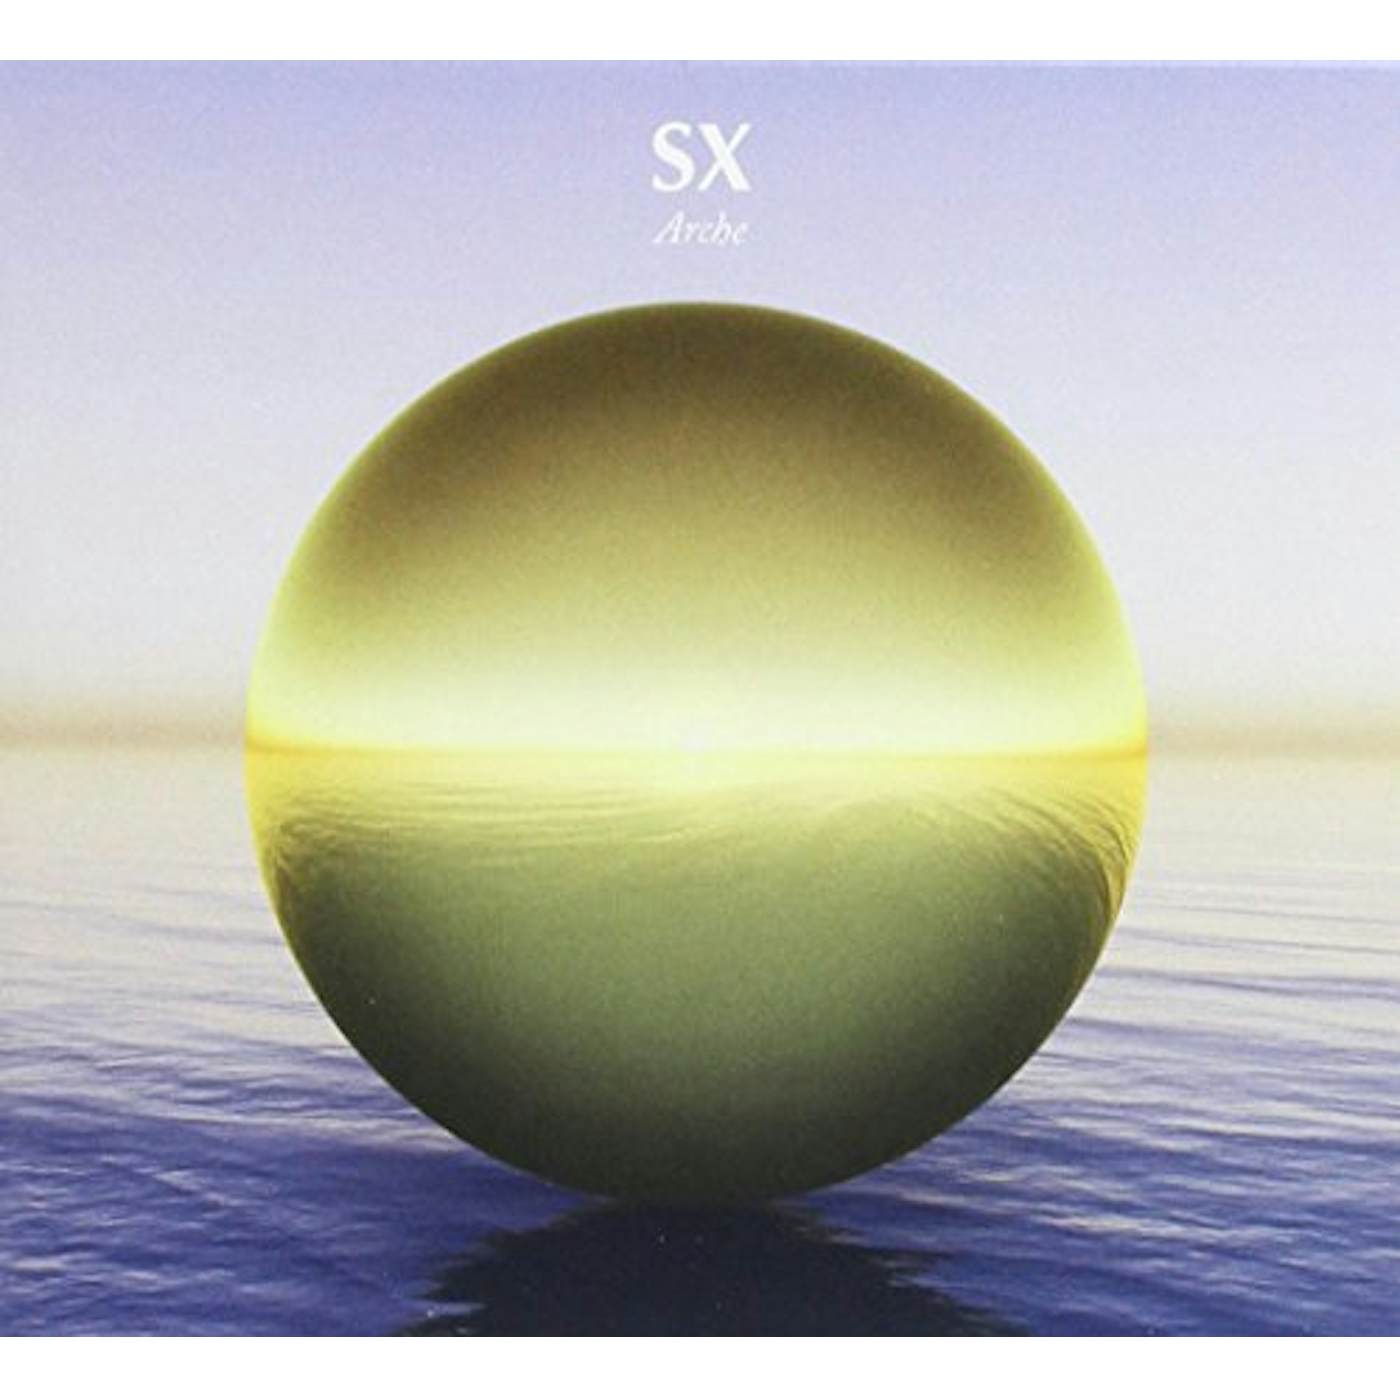 SX ARCHE CD